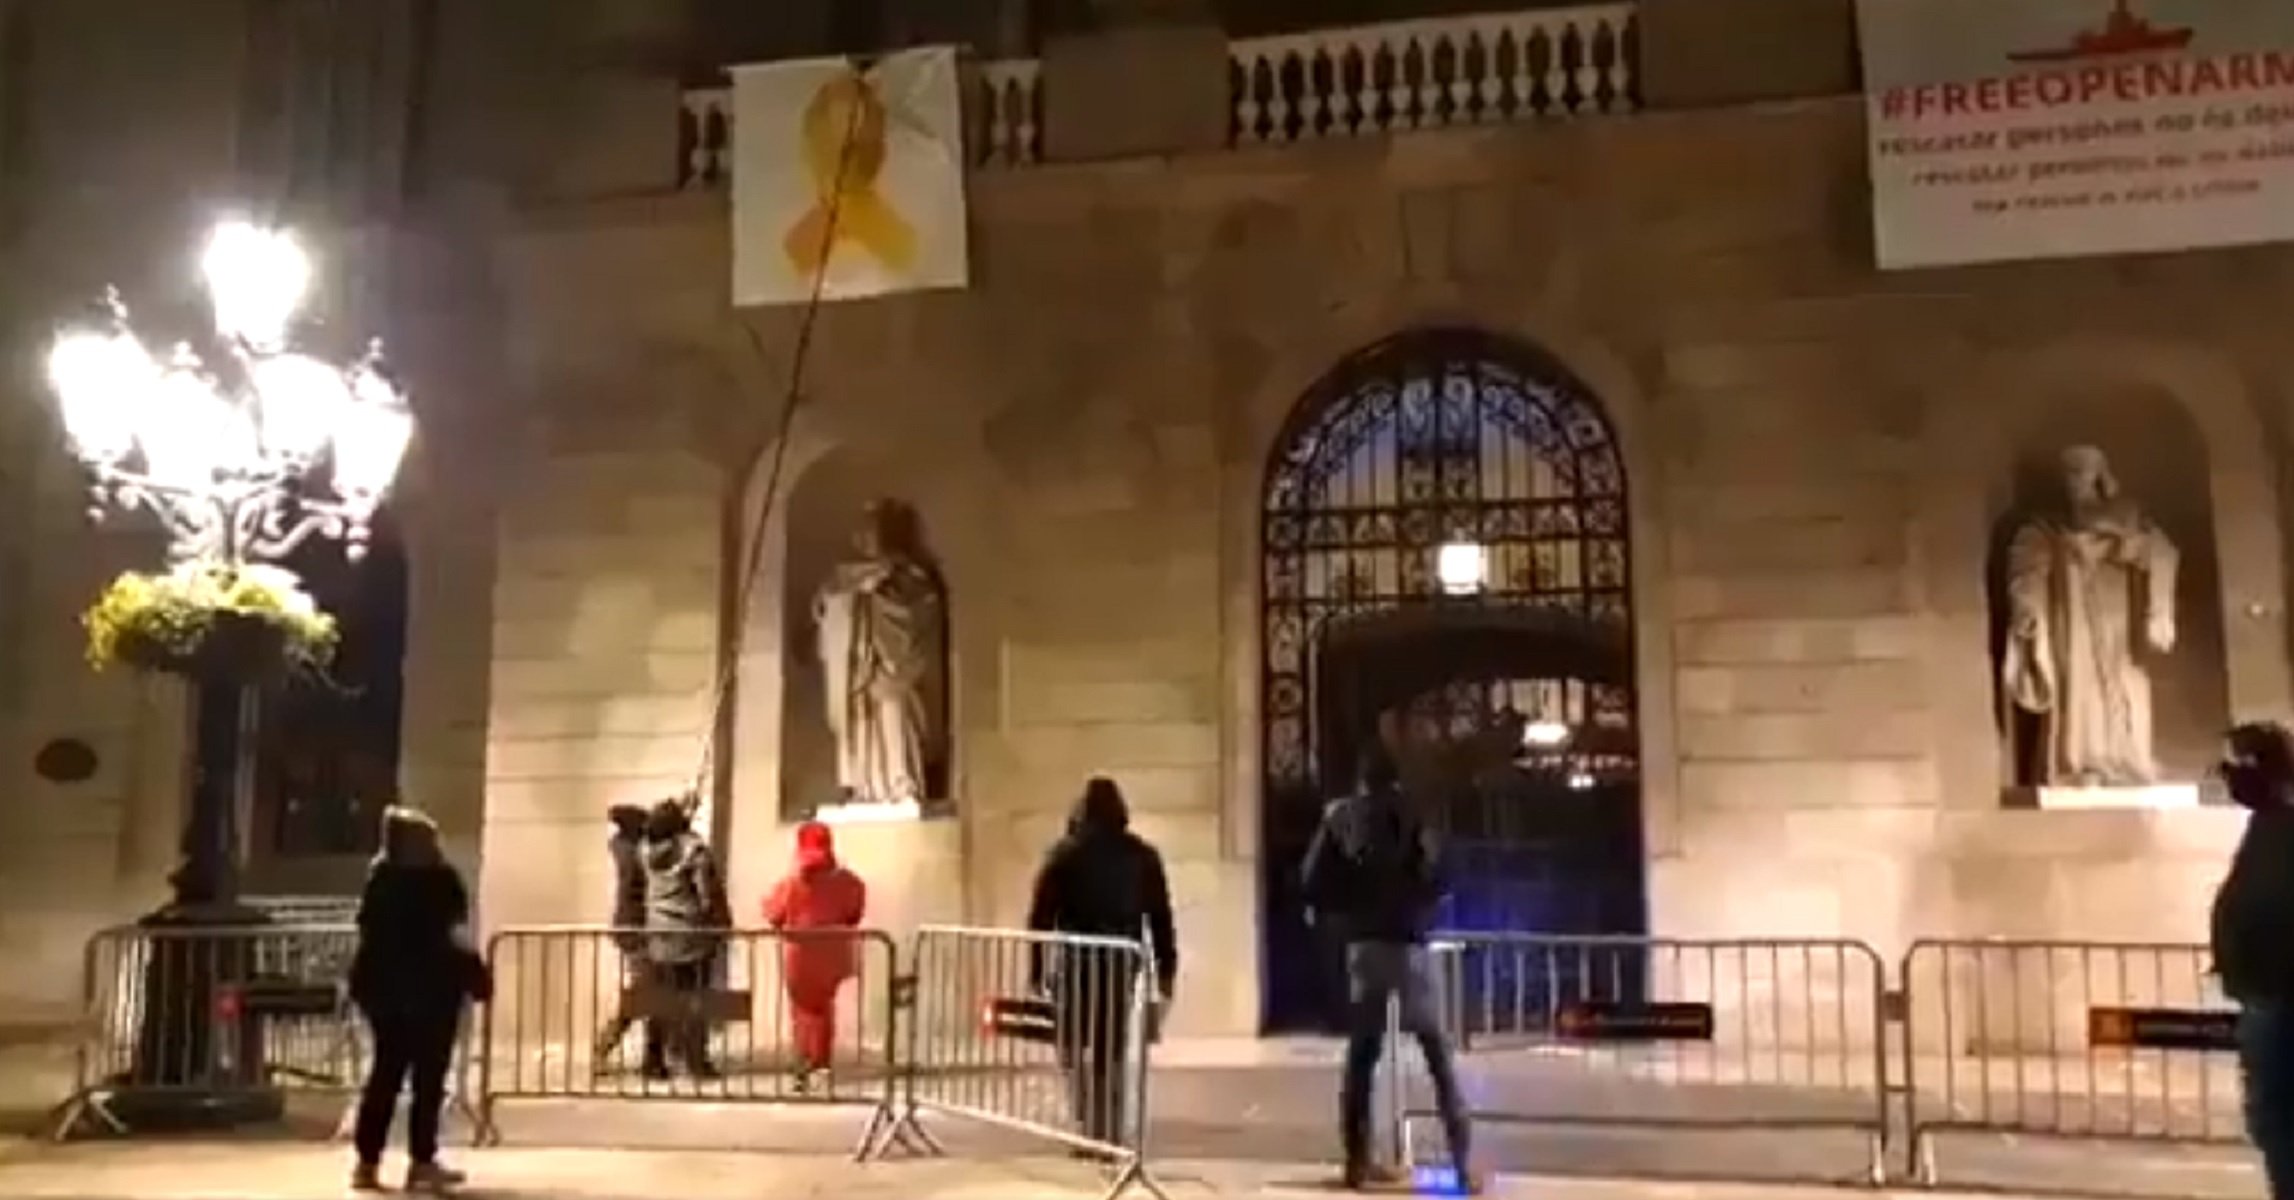 Unionistas descuelgan el lazo amarillo del ayuntamiento de Barcelona y lo intentan en la Generalitat